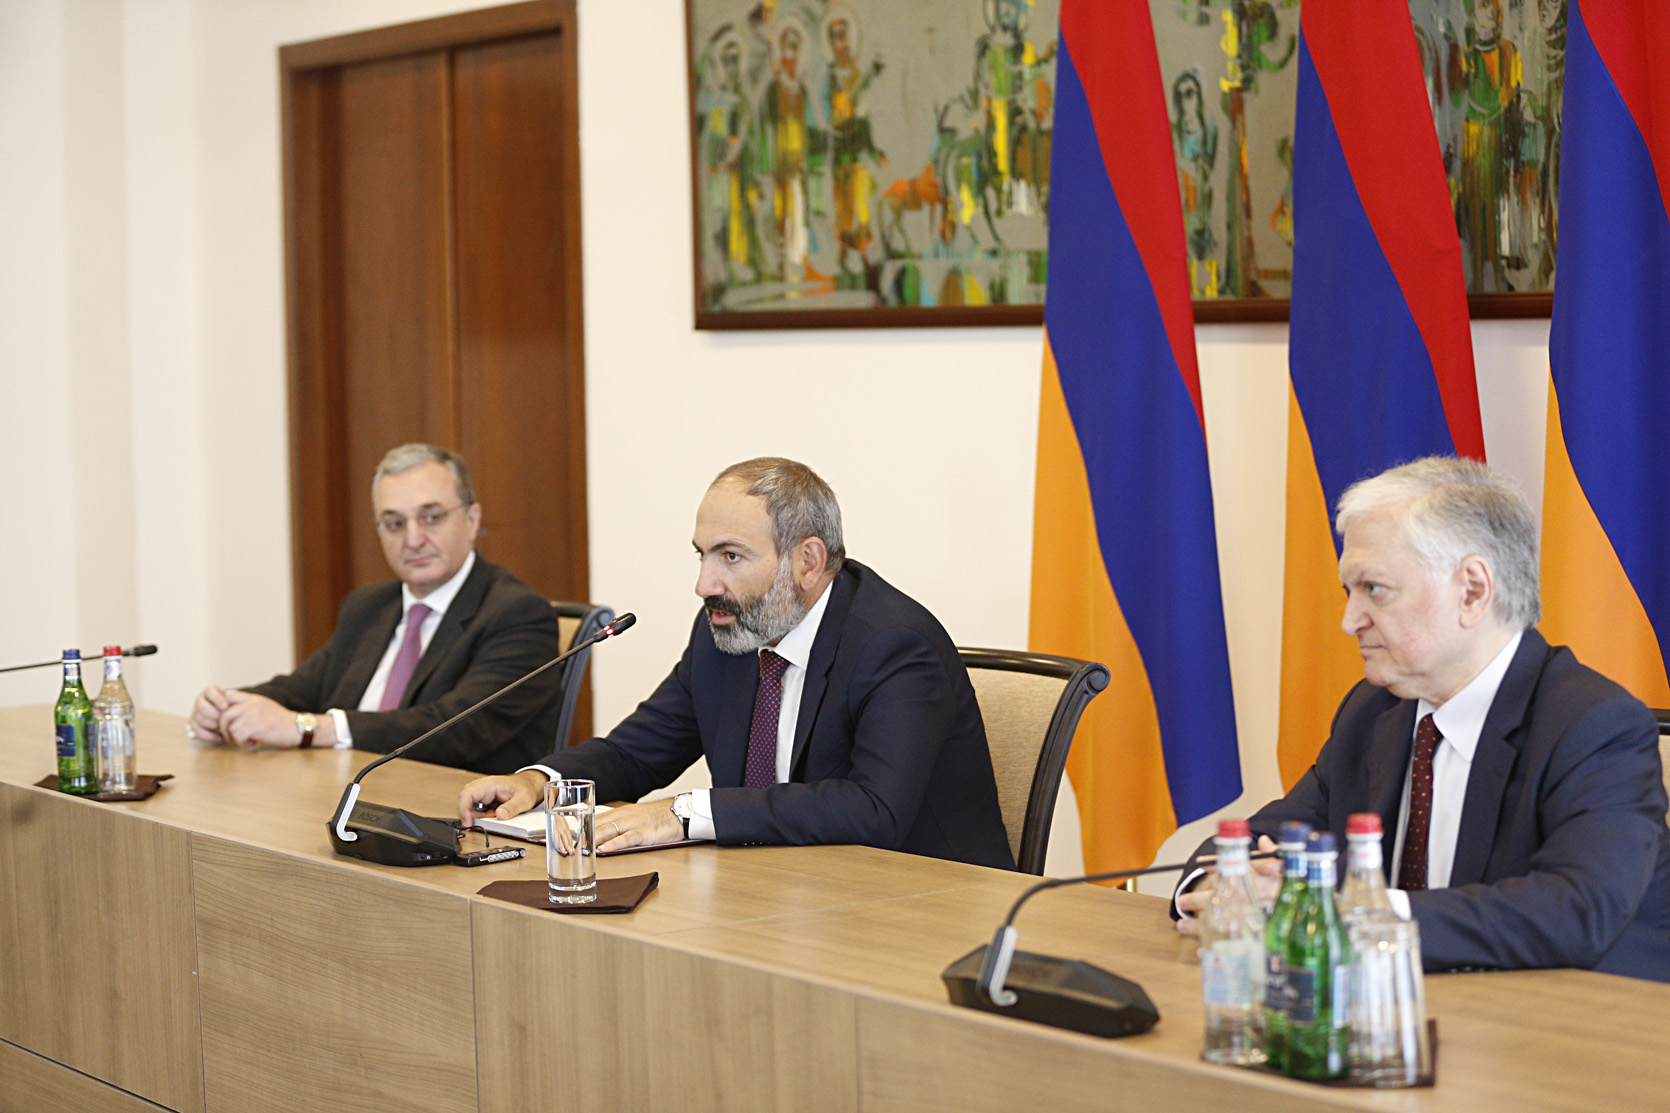 Հայաստանի արտաքին քաղաքականության օրակարգում կան լրջագույն հարցեր. վարչապետ